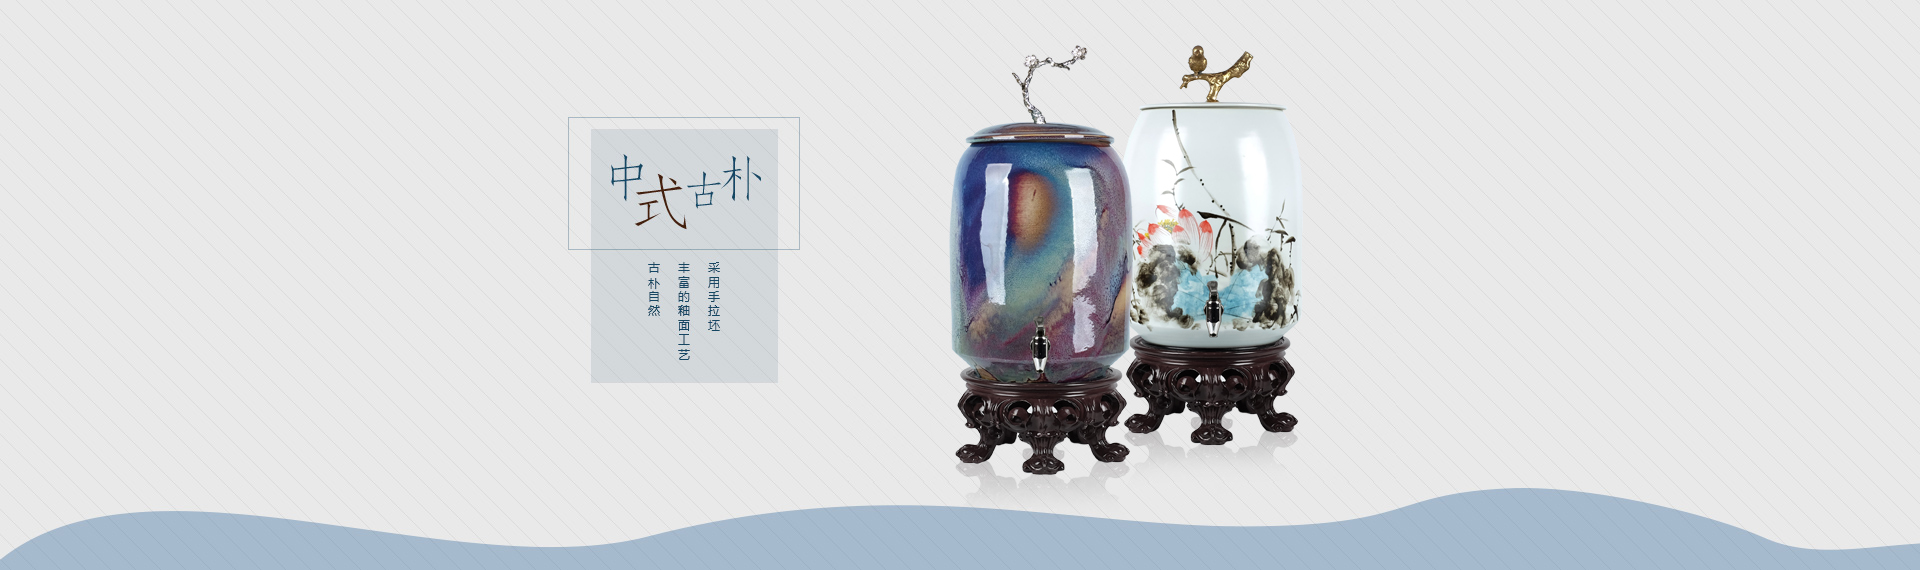 中式古朴净水器